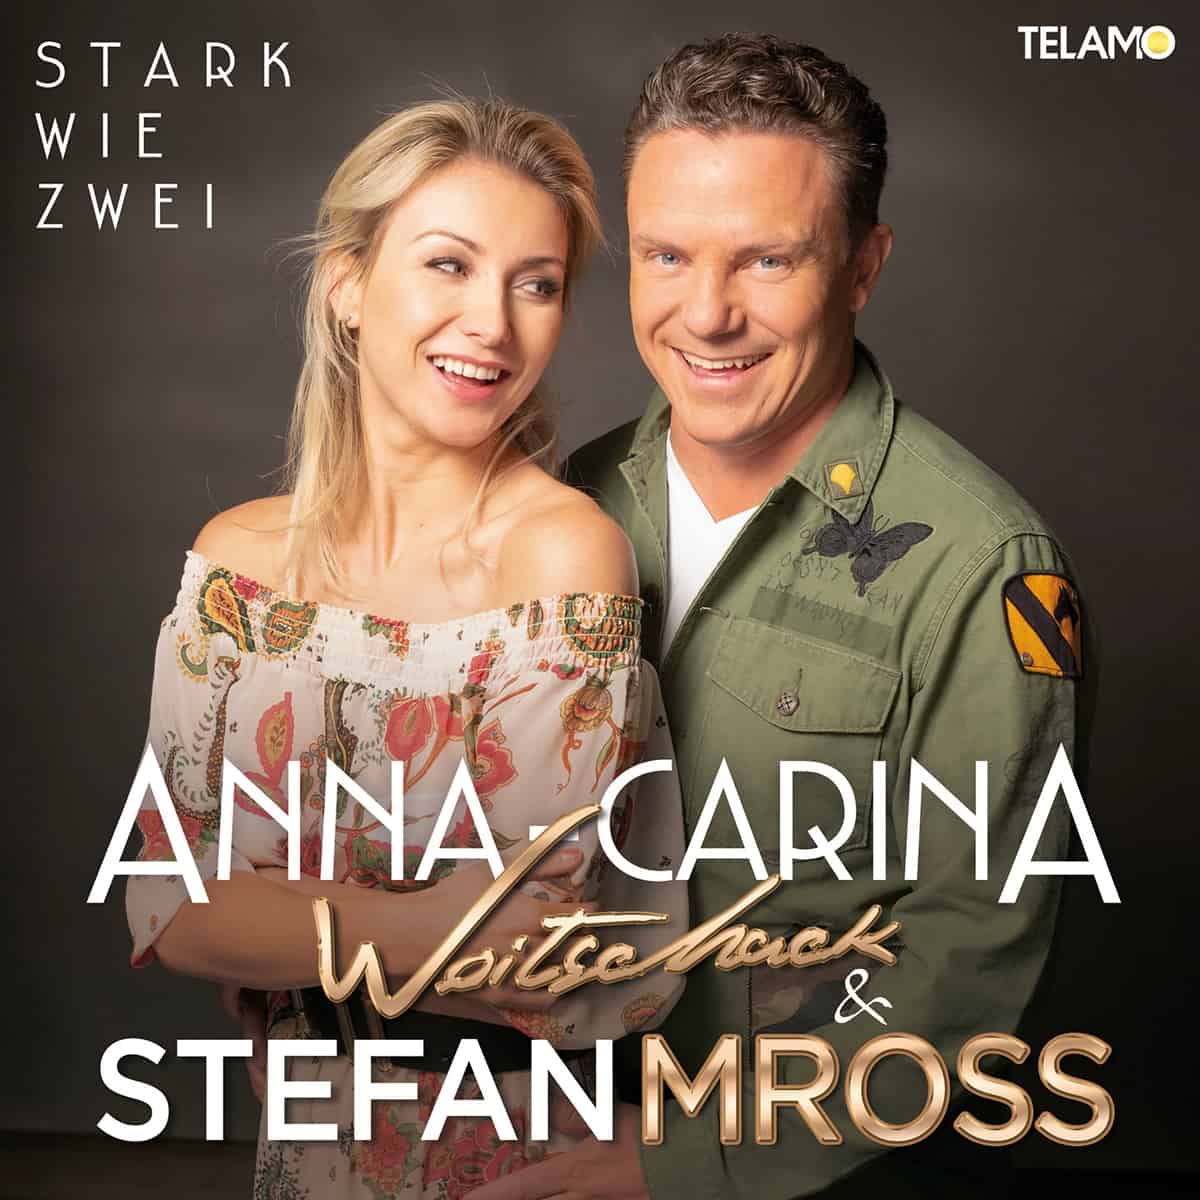 Anna-Carina Woitschack & Stefan Mross - Stark wie zwei (2020) 